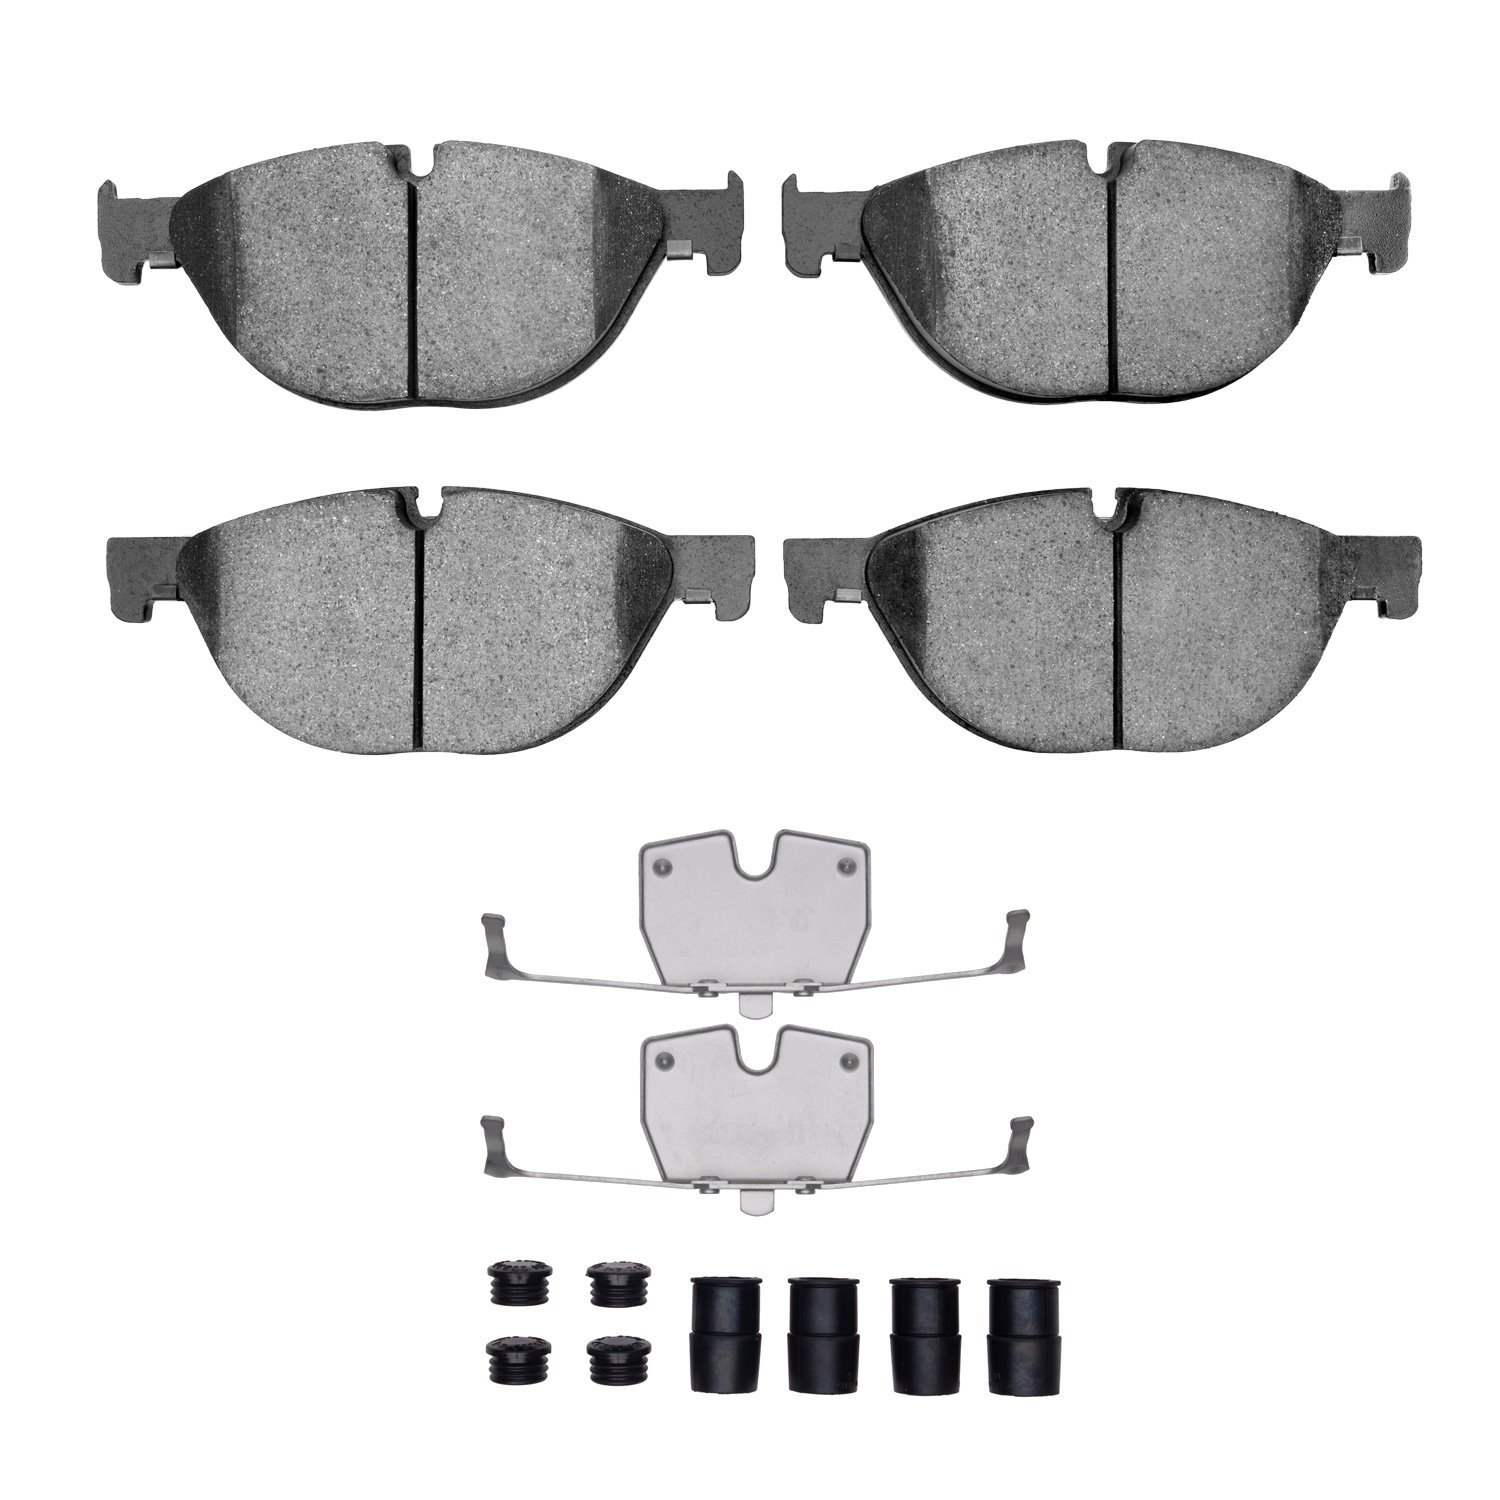 1310-1409-01 3000-Series Ceramic Brake Pads & Hardware Kit, 2009-2018 BMW, Position: Front